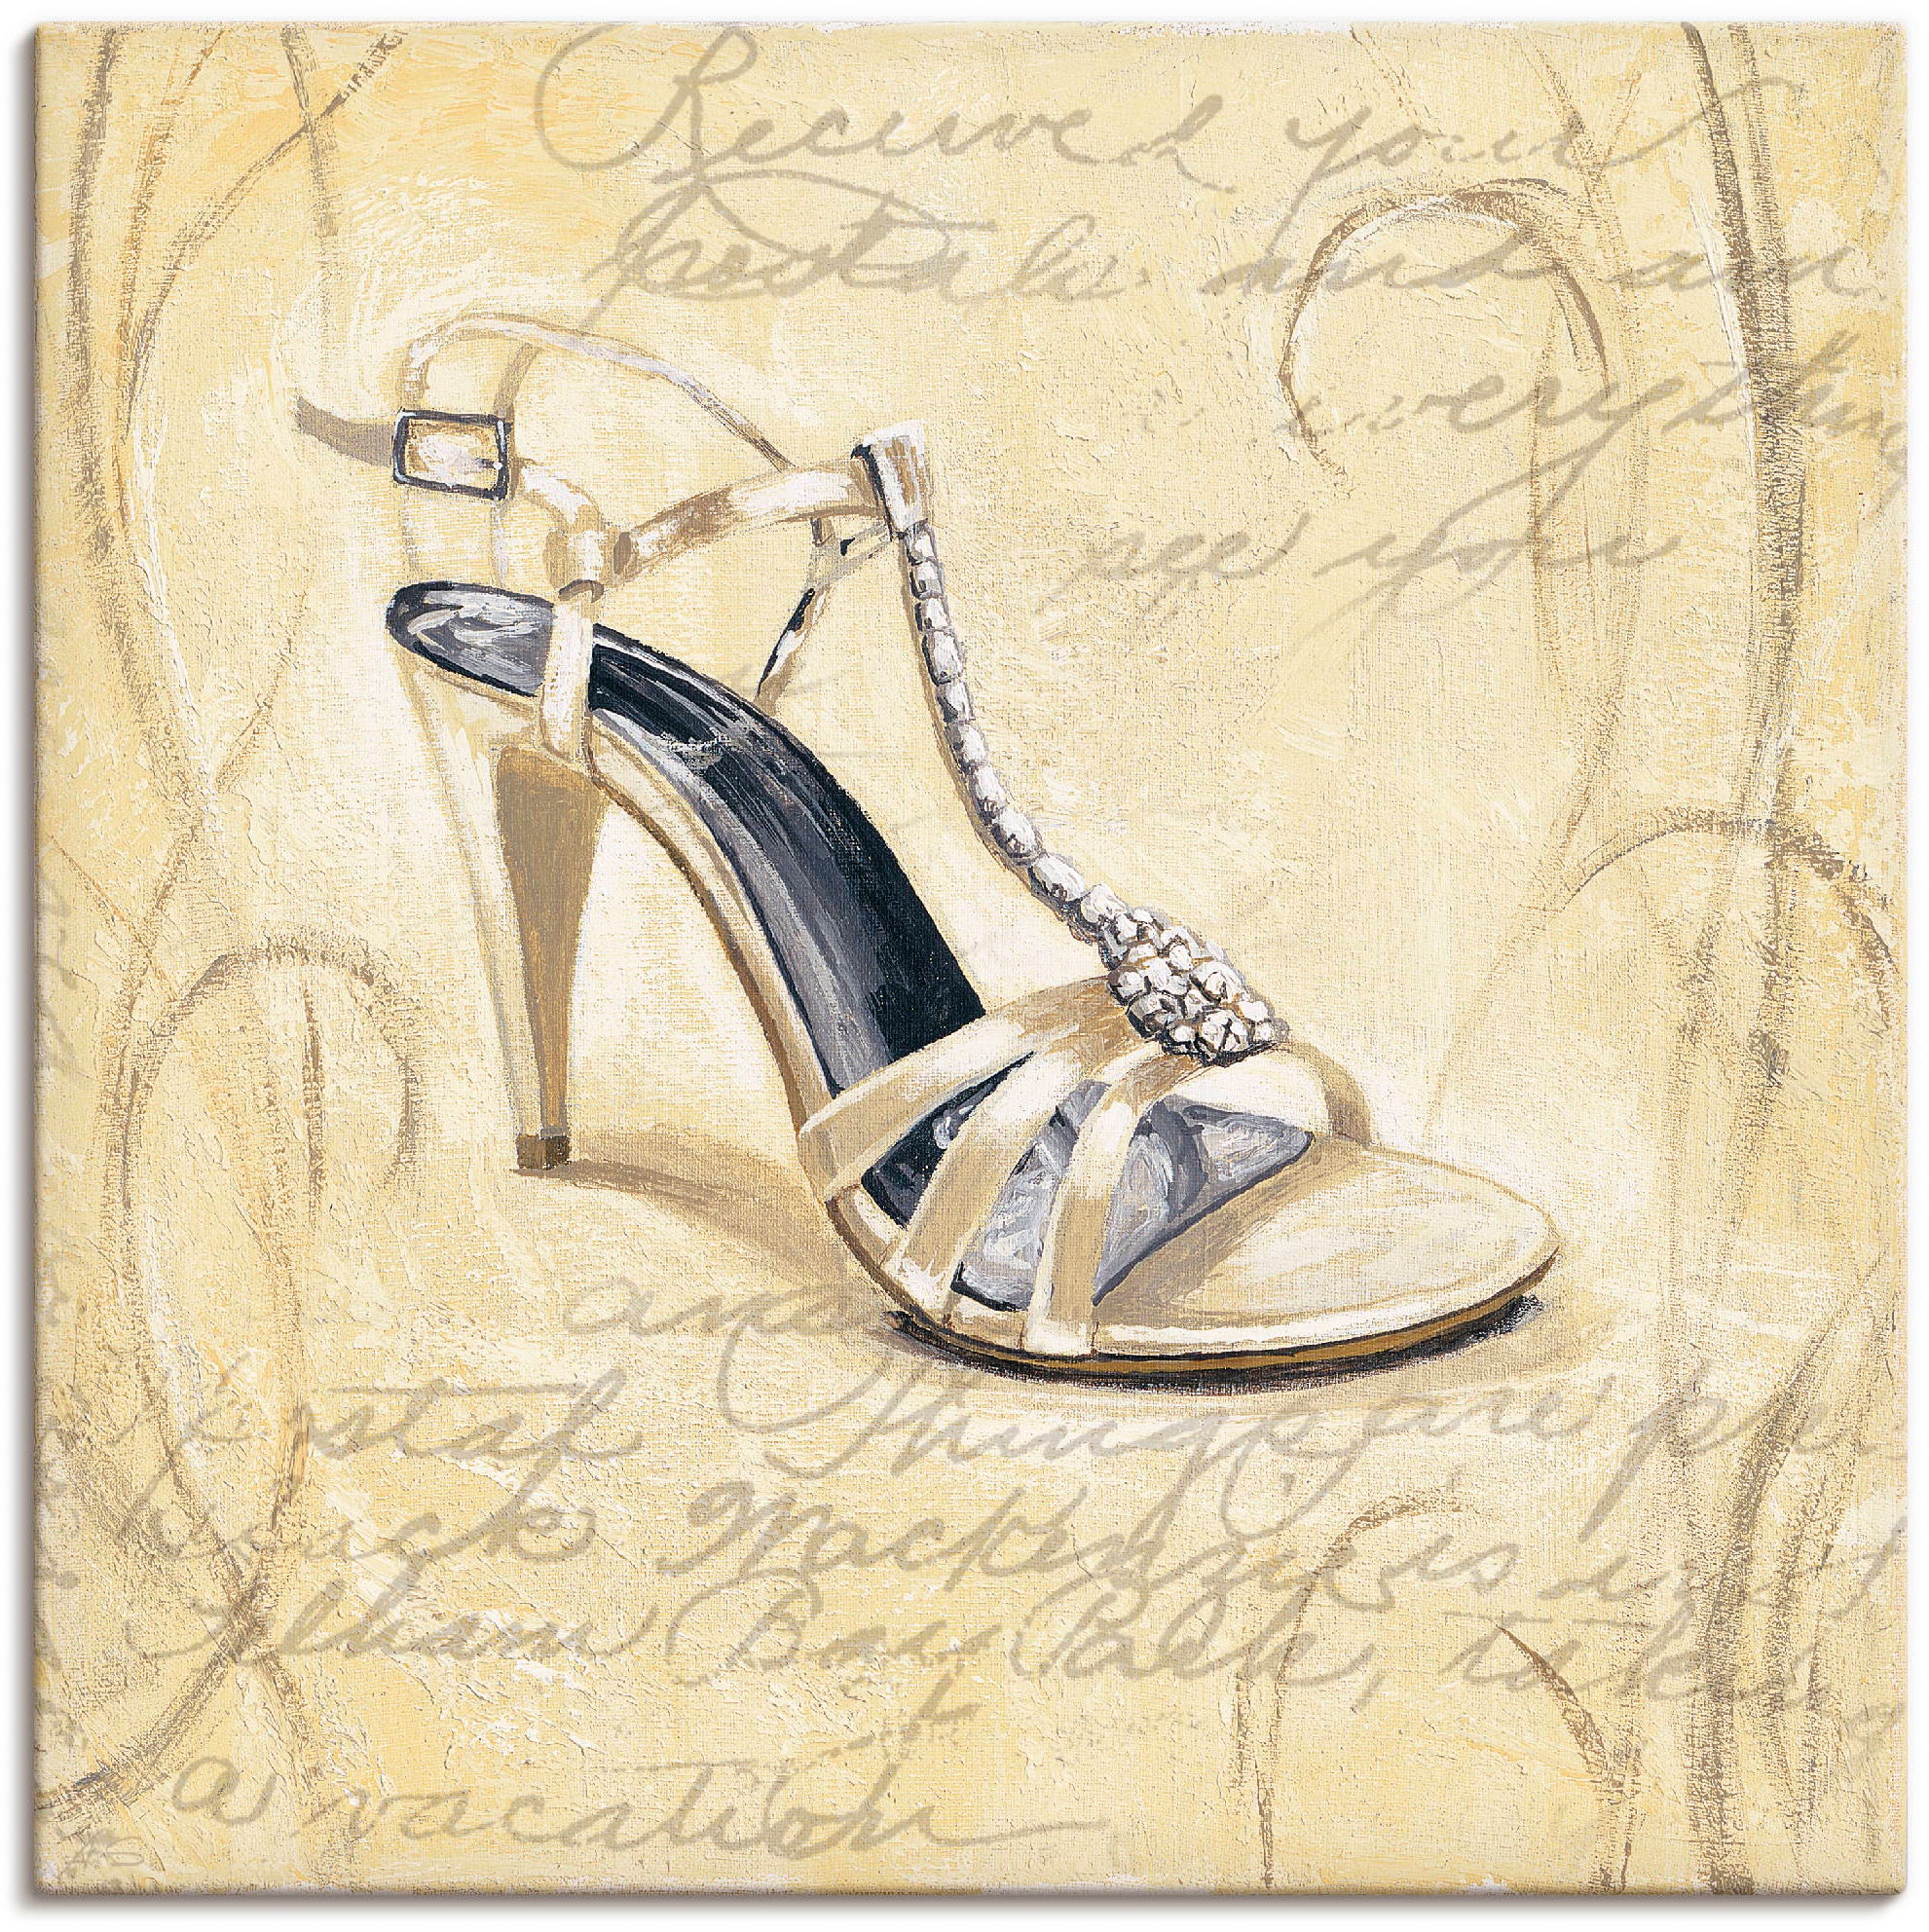 Artland Wandbild »Stiletto I - Schuh«, Mode, (1 St.), als Leinwandbild, Wandaufkleber in verschied. Größen